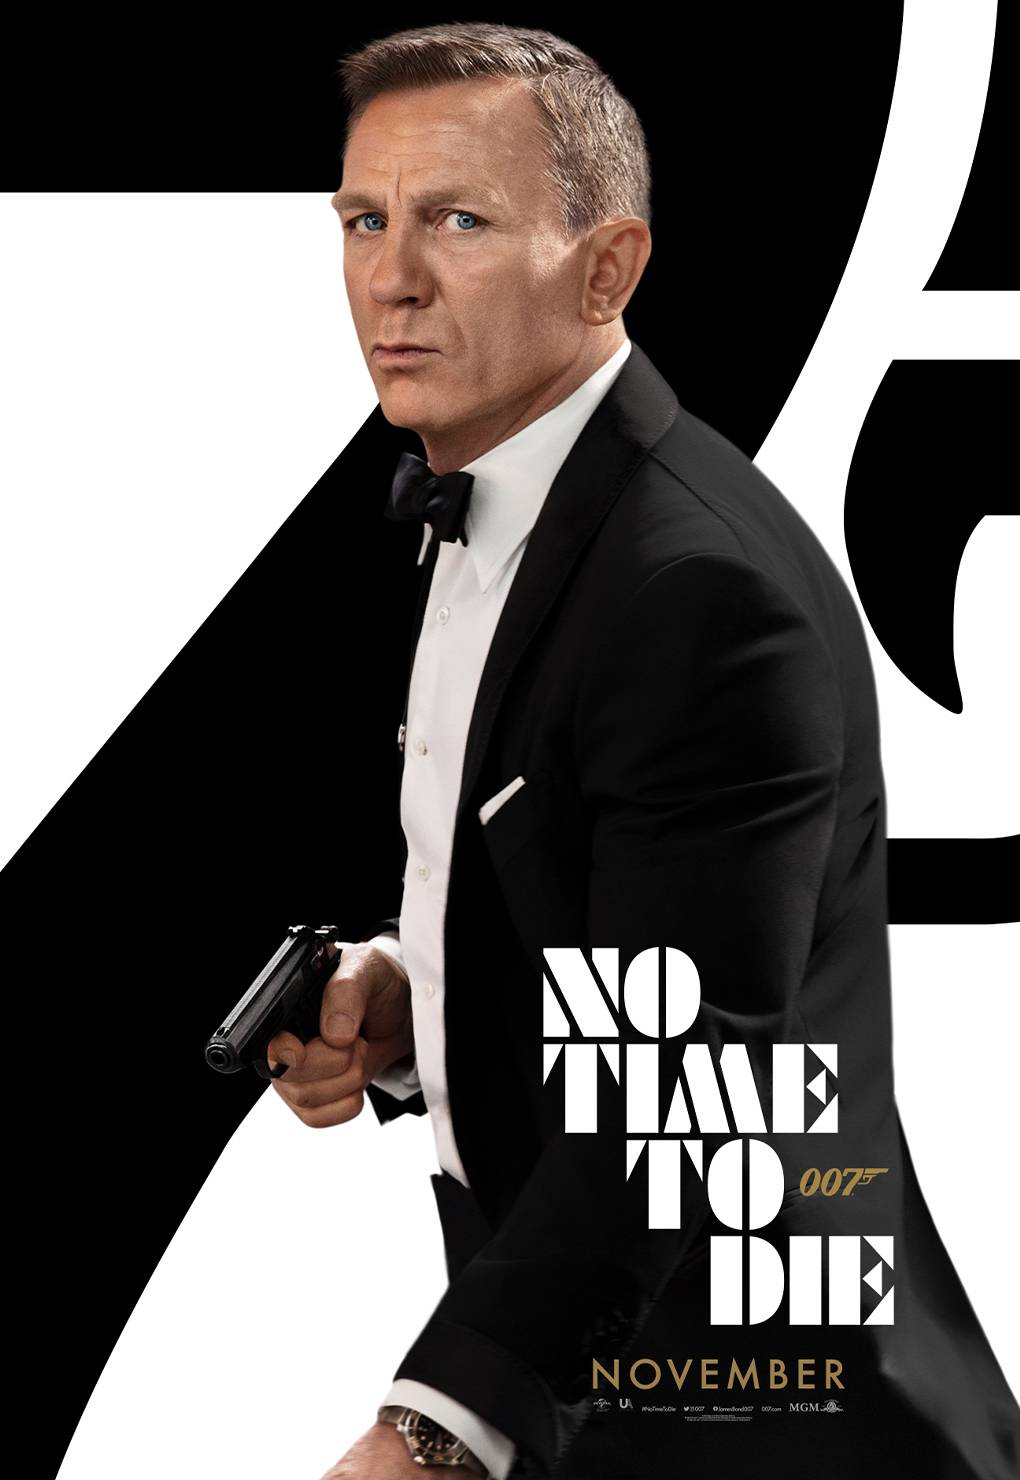 Ontdek de Complete Collectie van James Bond Posters - Krijg 20% Korting nu!